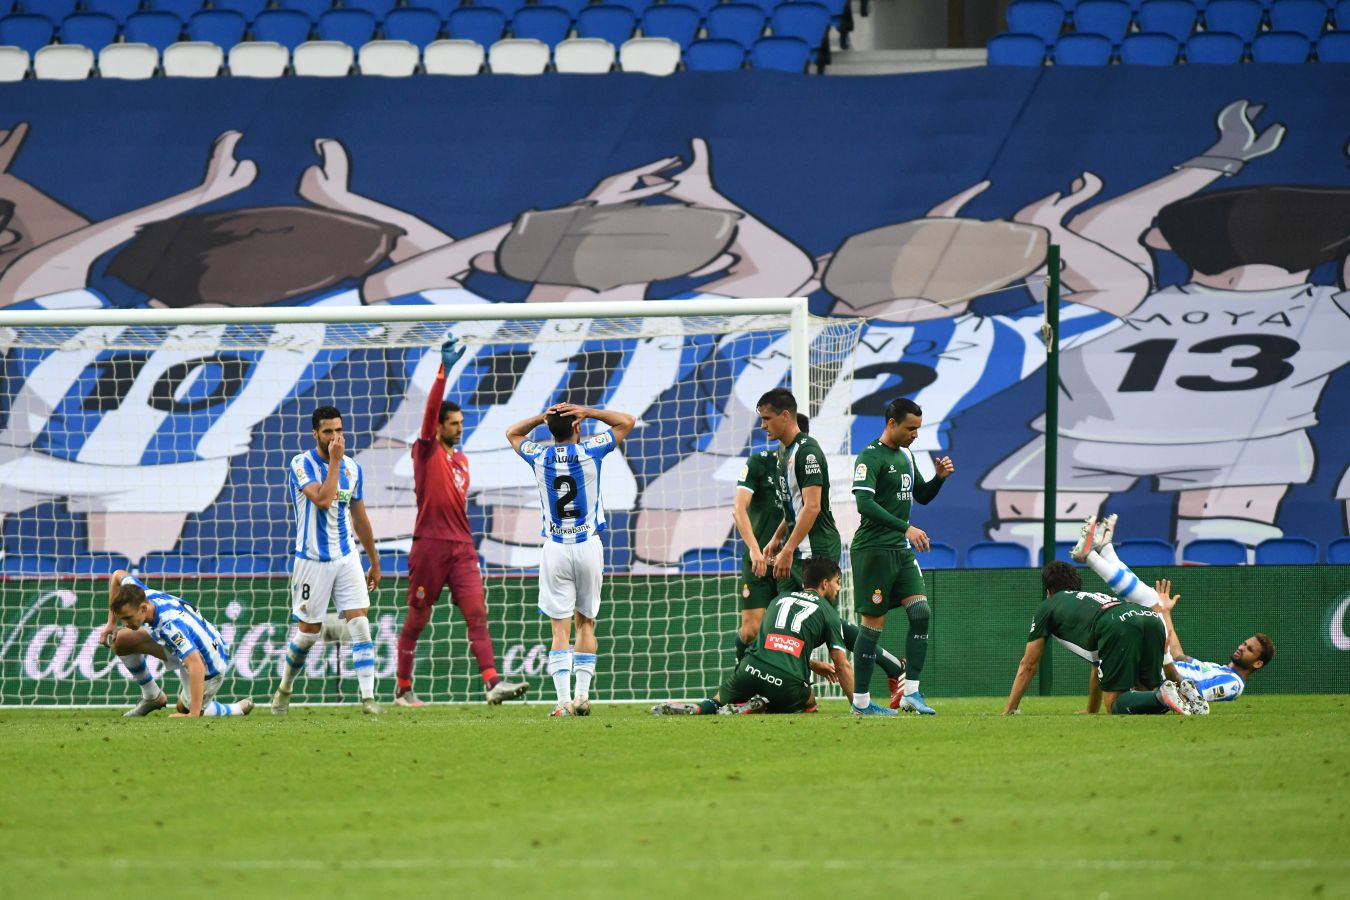 La Real Sociedad ha ganado su primer partido tras la vuelta de la Liga después de remontar a un Espanyol que se había adelantado en el marcador.